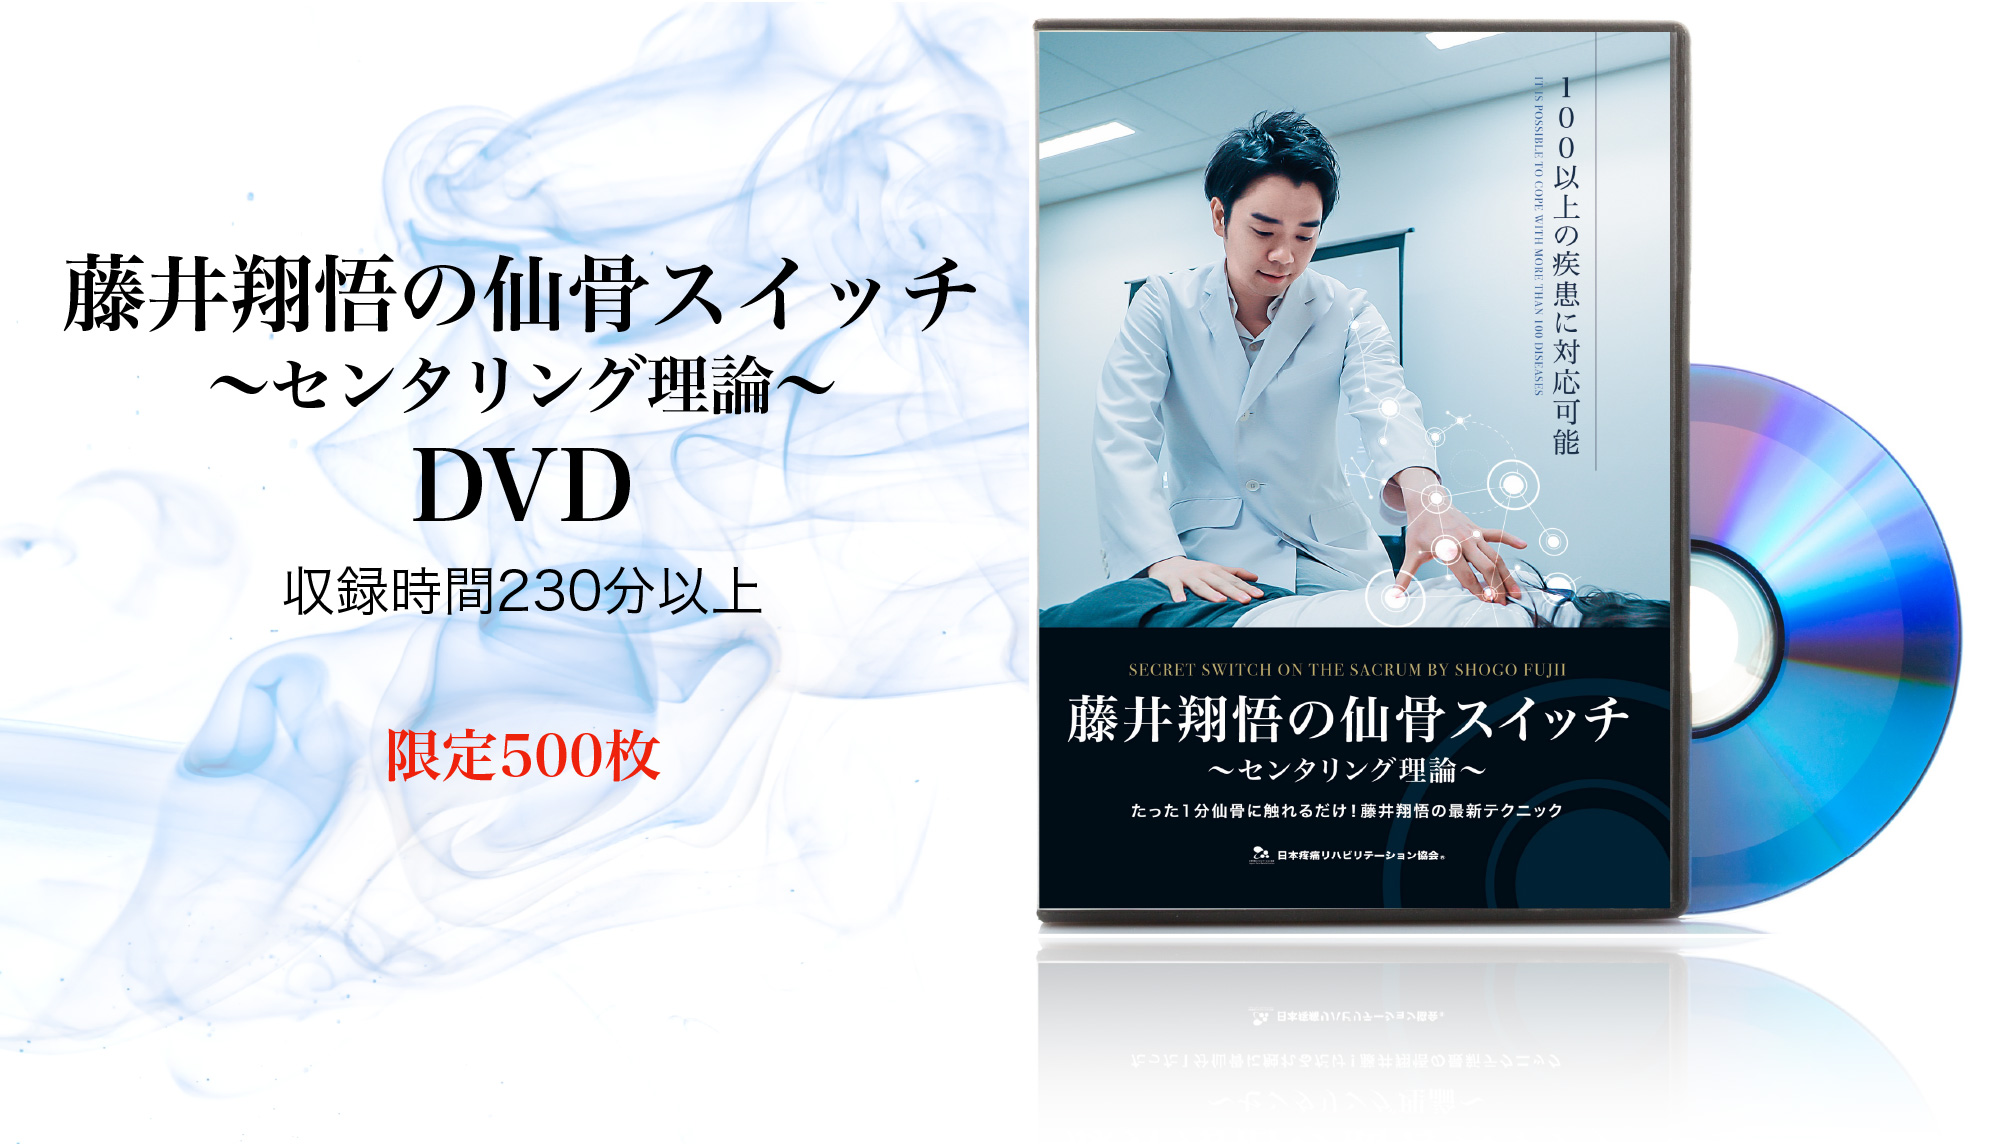 リバースローテーションテクニック 藤井翔悟 疼痛リハビリテーション協会 DVD